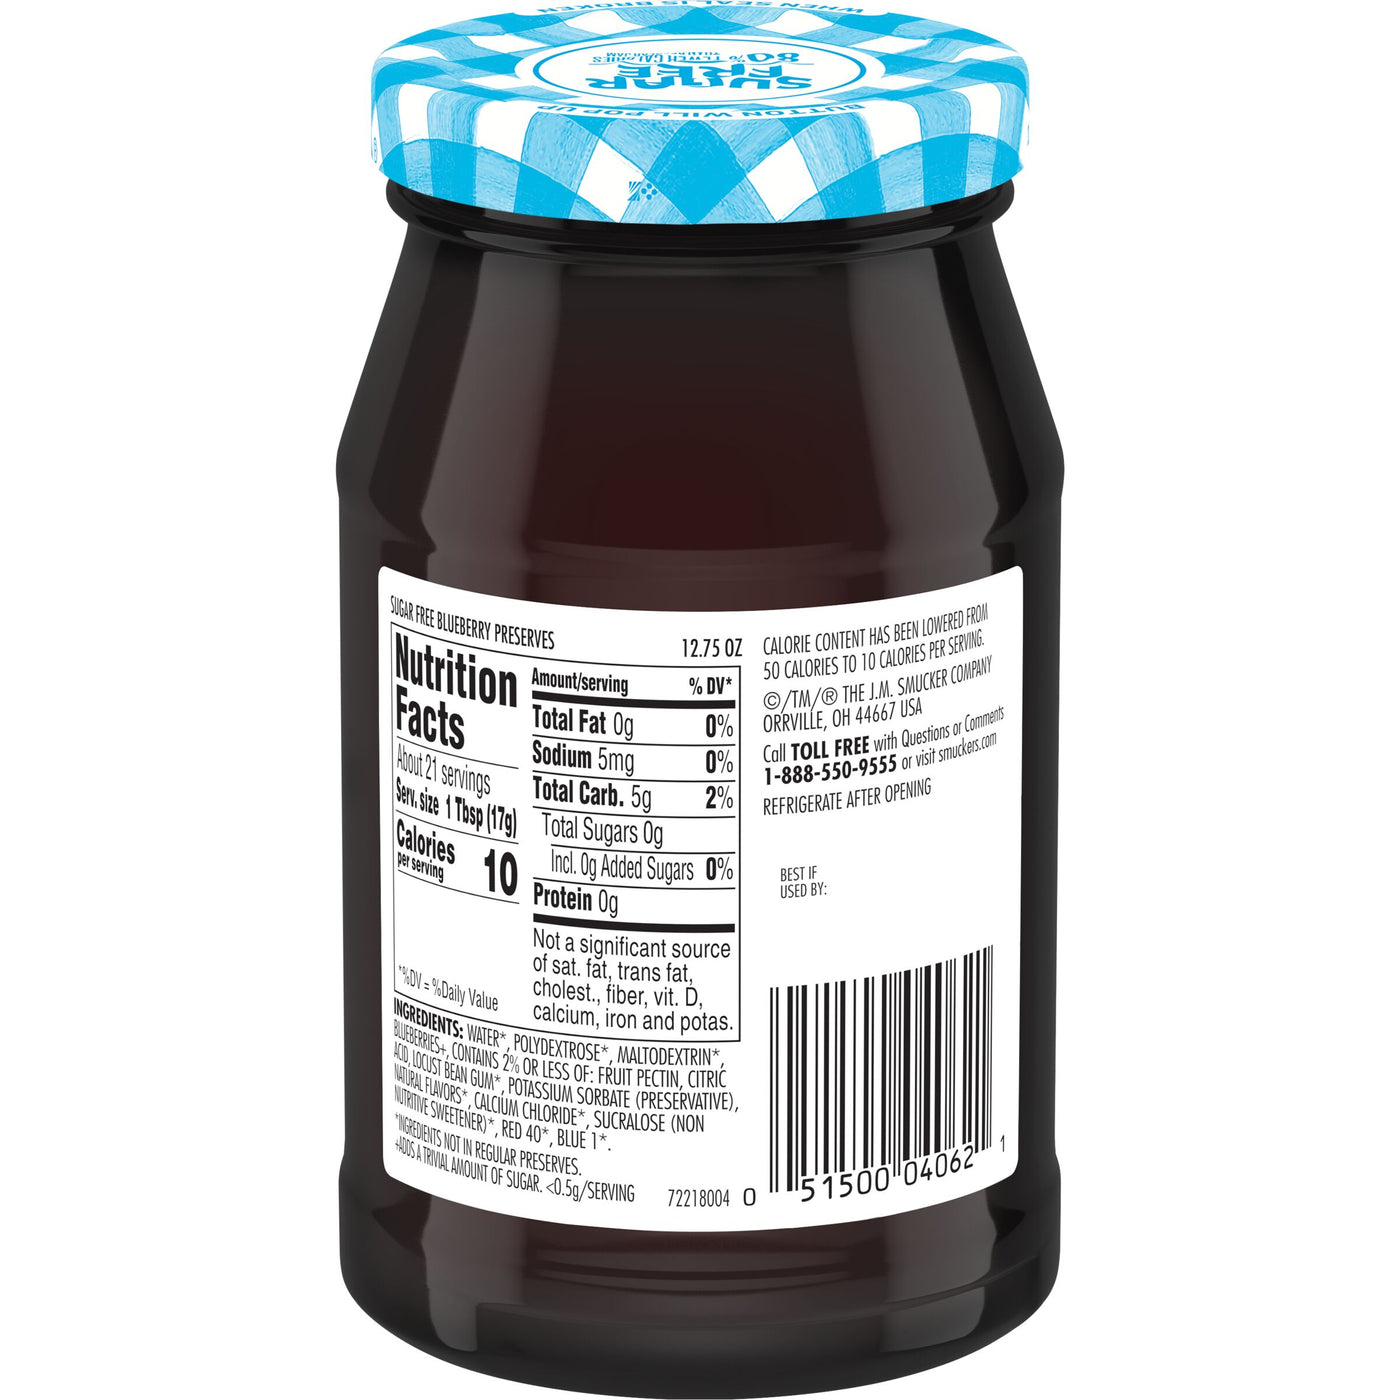 Smucker's Sugar Free Blueberry Preserves with Splenda Brand Sweetener, 12.75 oz